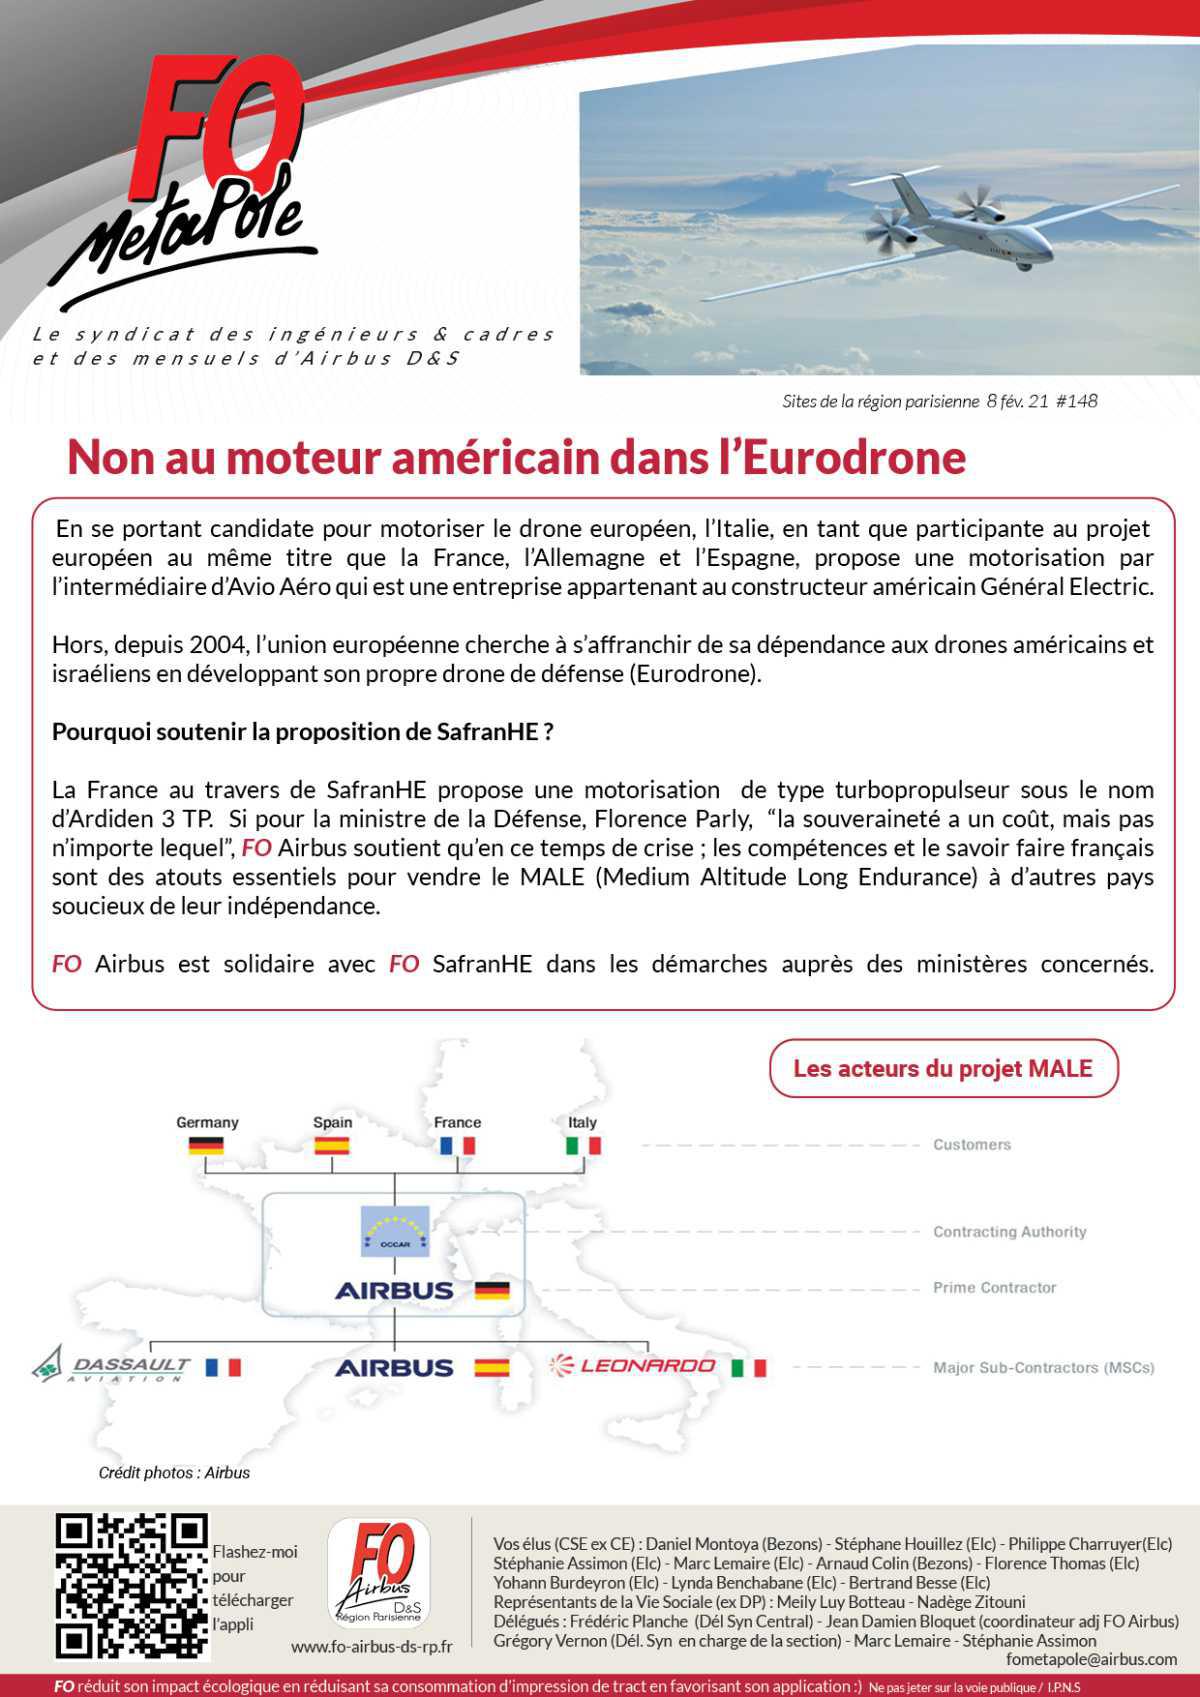 Non au moteur américain dans l'Eurodrone